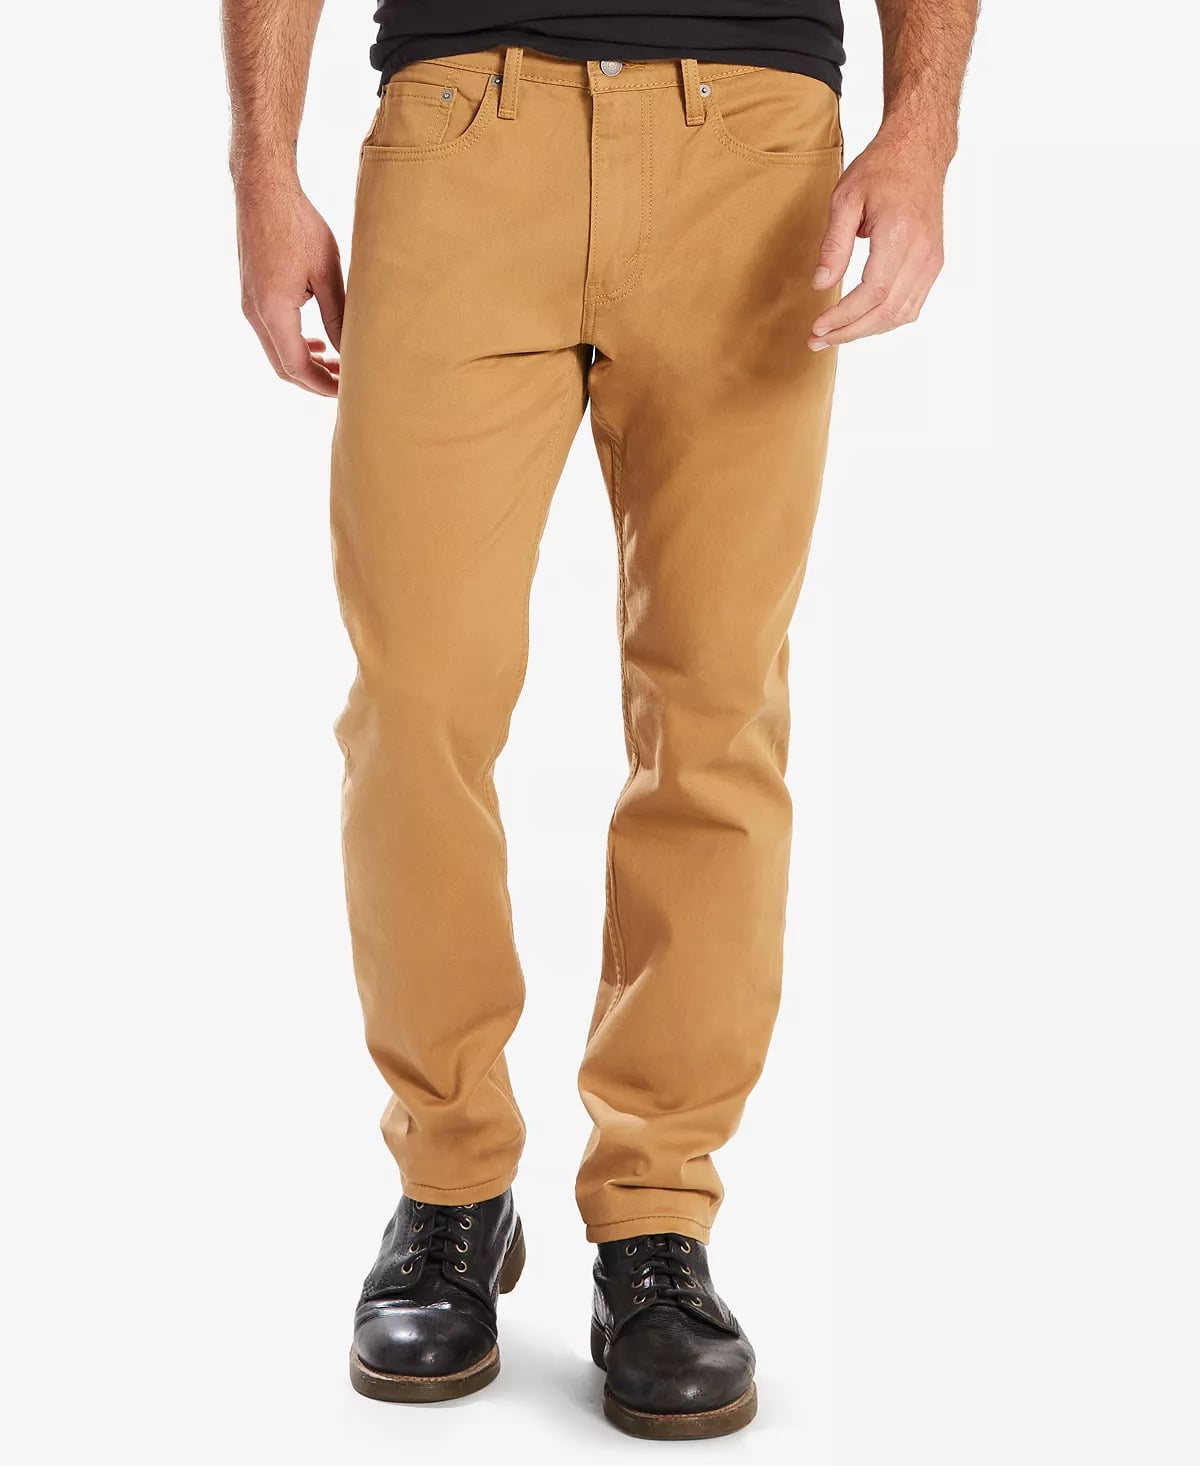 Levi's CARAWAY-WATERLESS Men's 502 Taper Soft Twill Jeans, US 33x30 ...